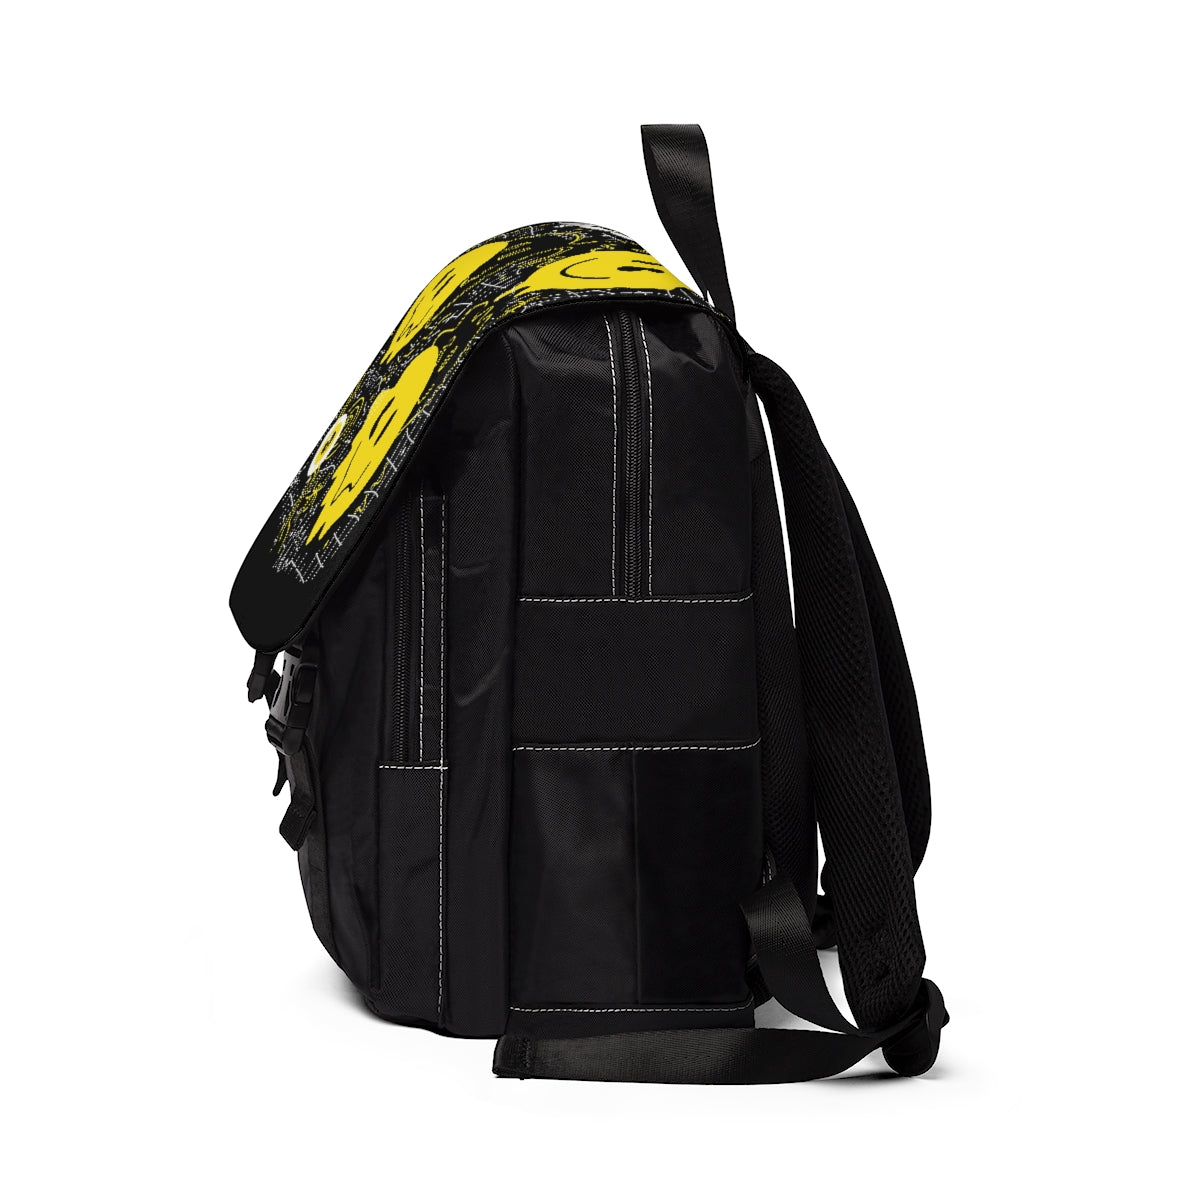 Melted Acid Smileys - Unisex Casual Shoulder Backpack